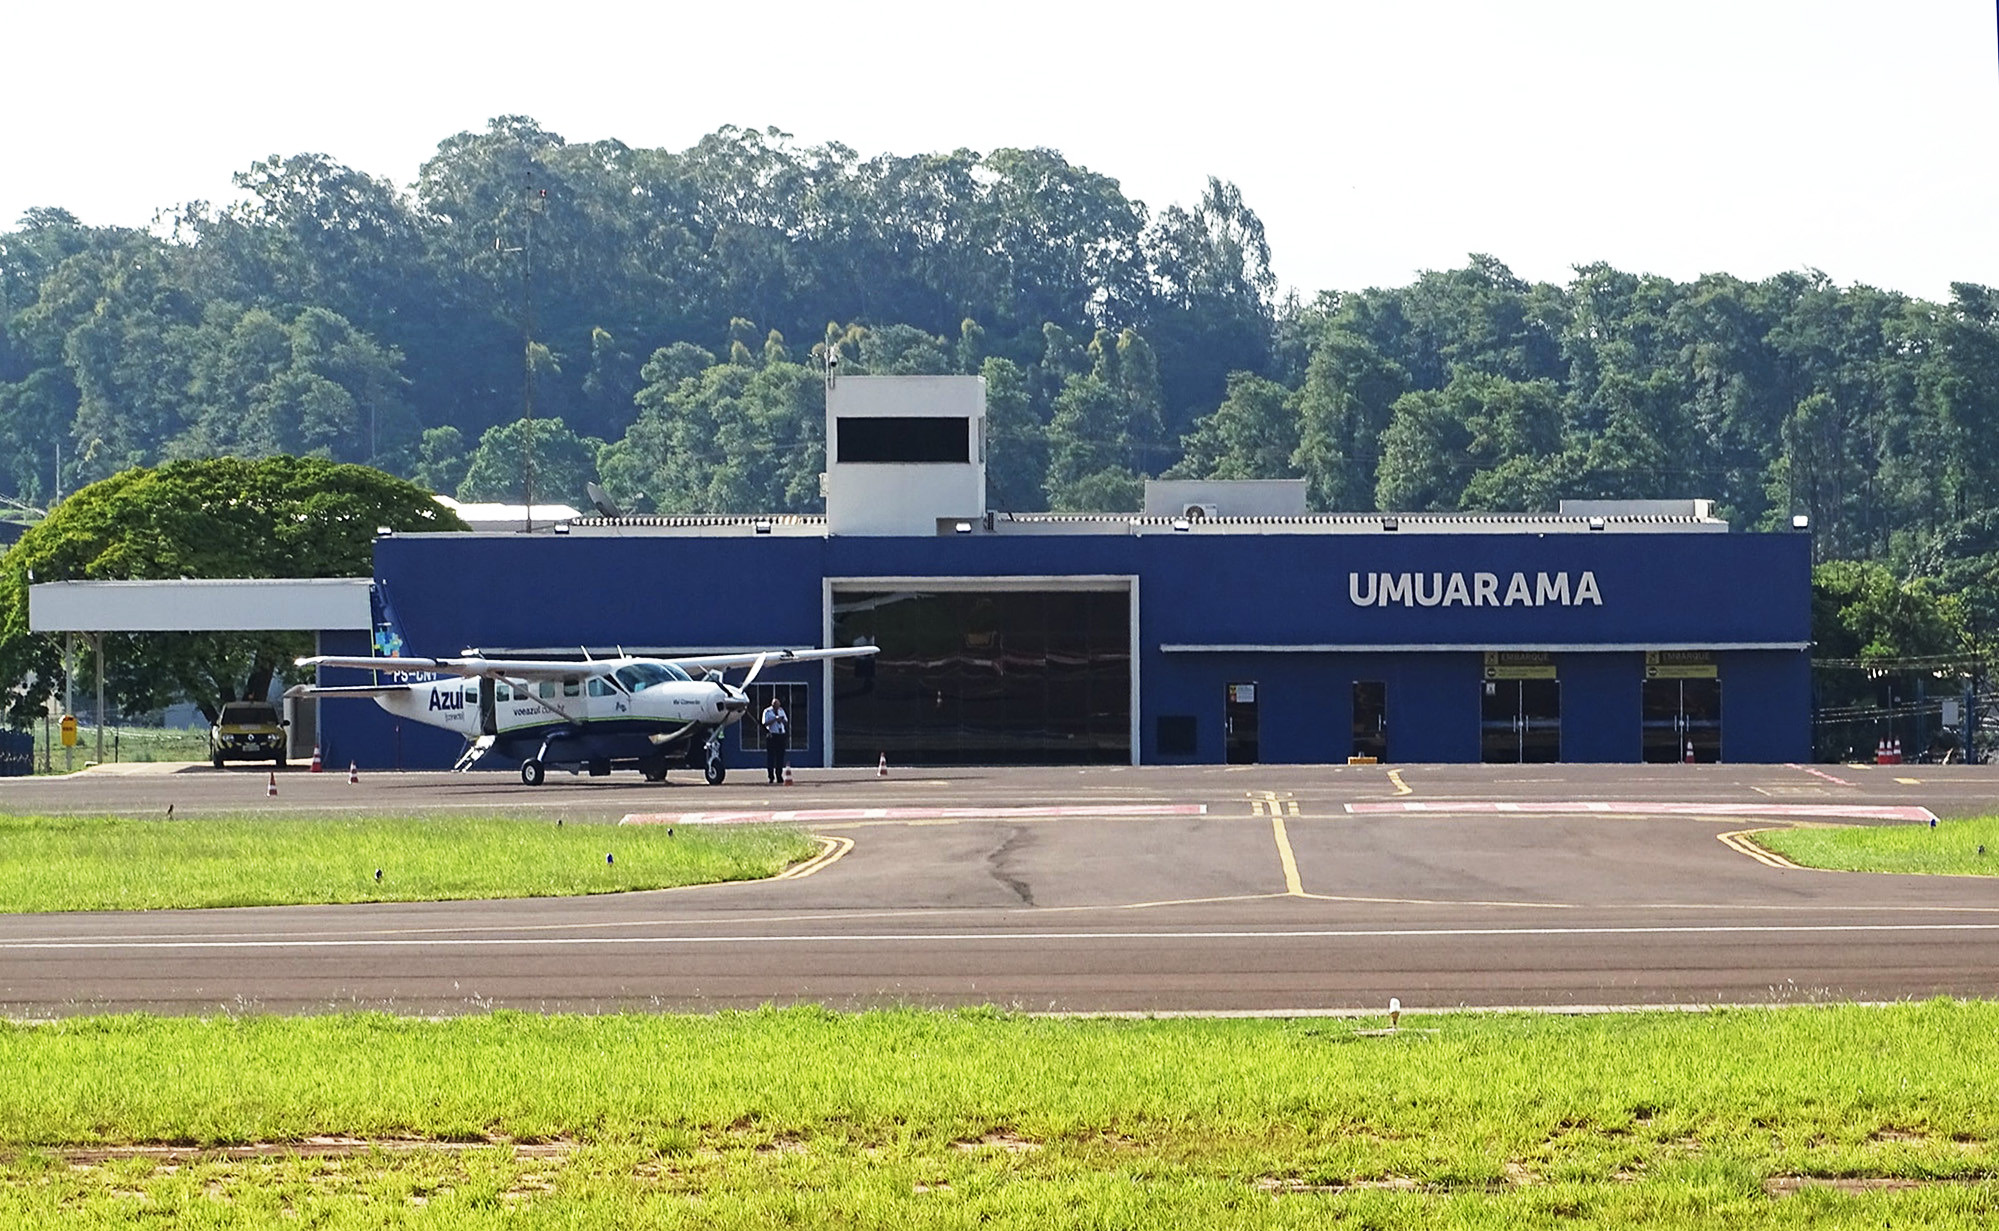 Portaria suspende contrato entre município e empresa que gerenciava o aeroporto